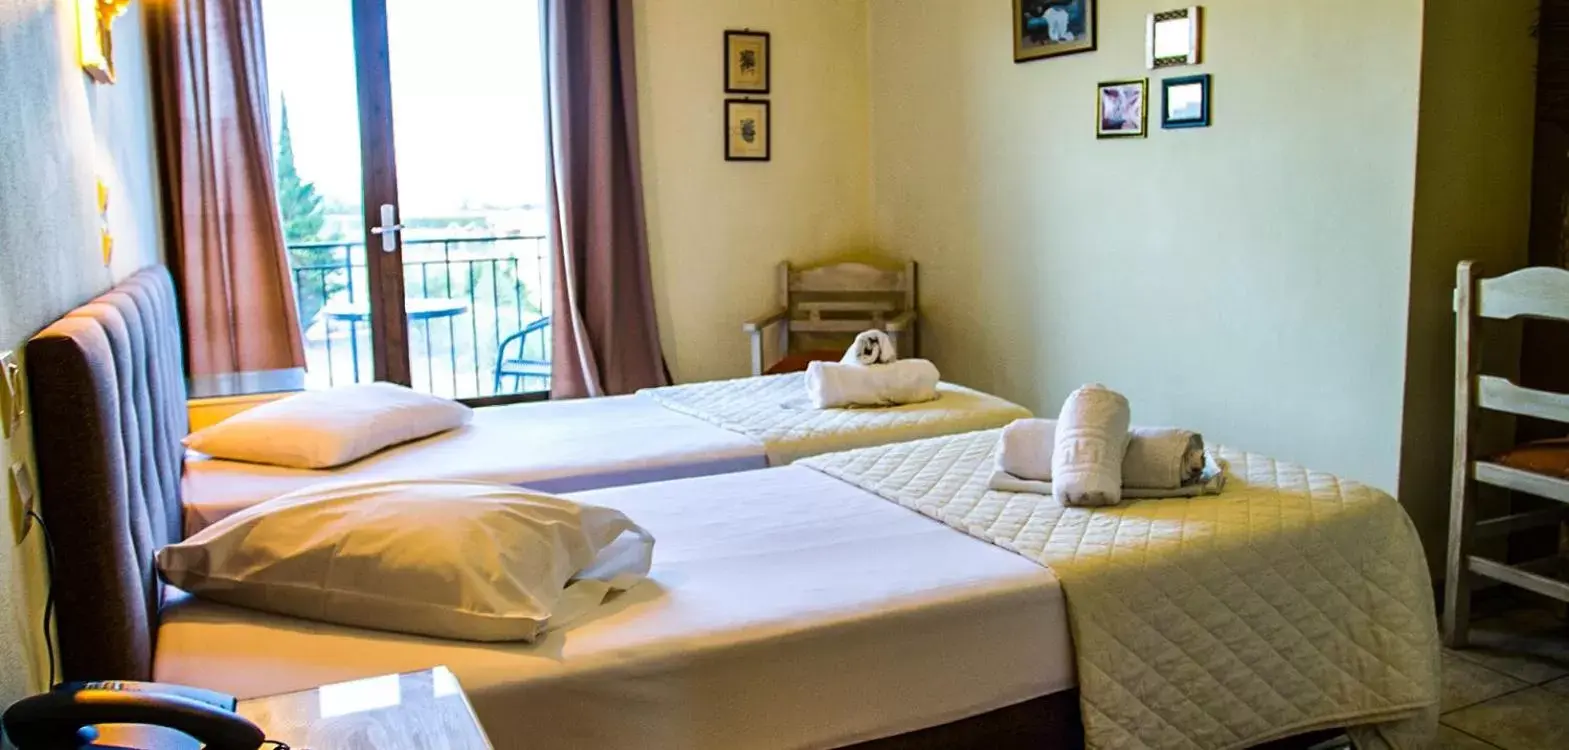 Room Photo in Hotel Alos